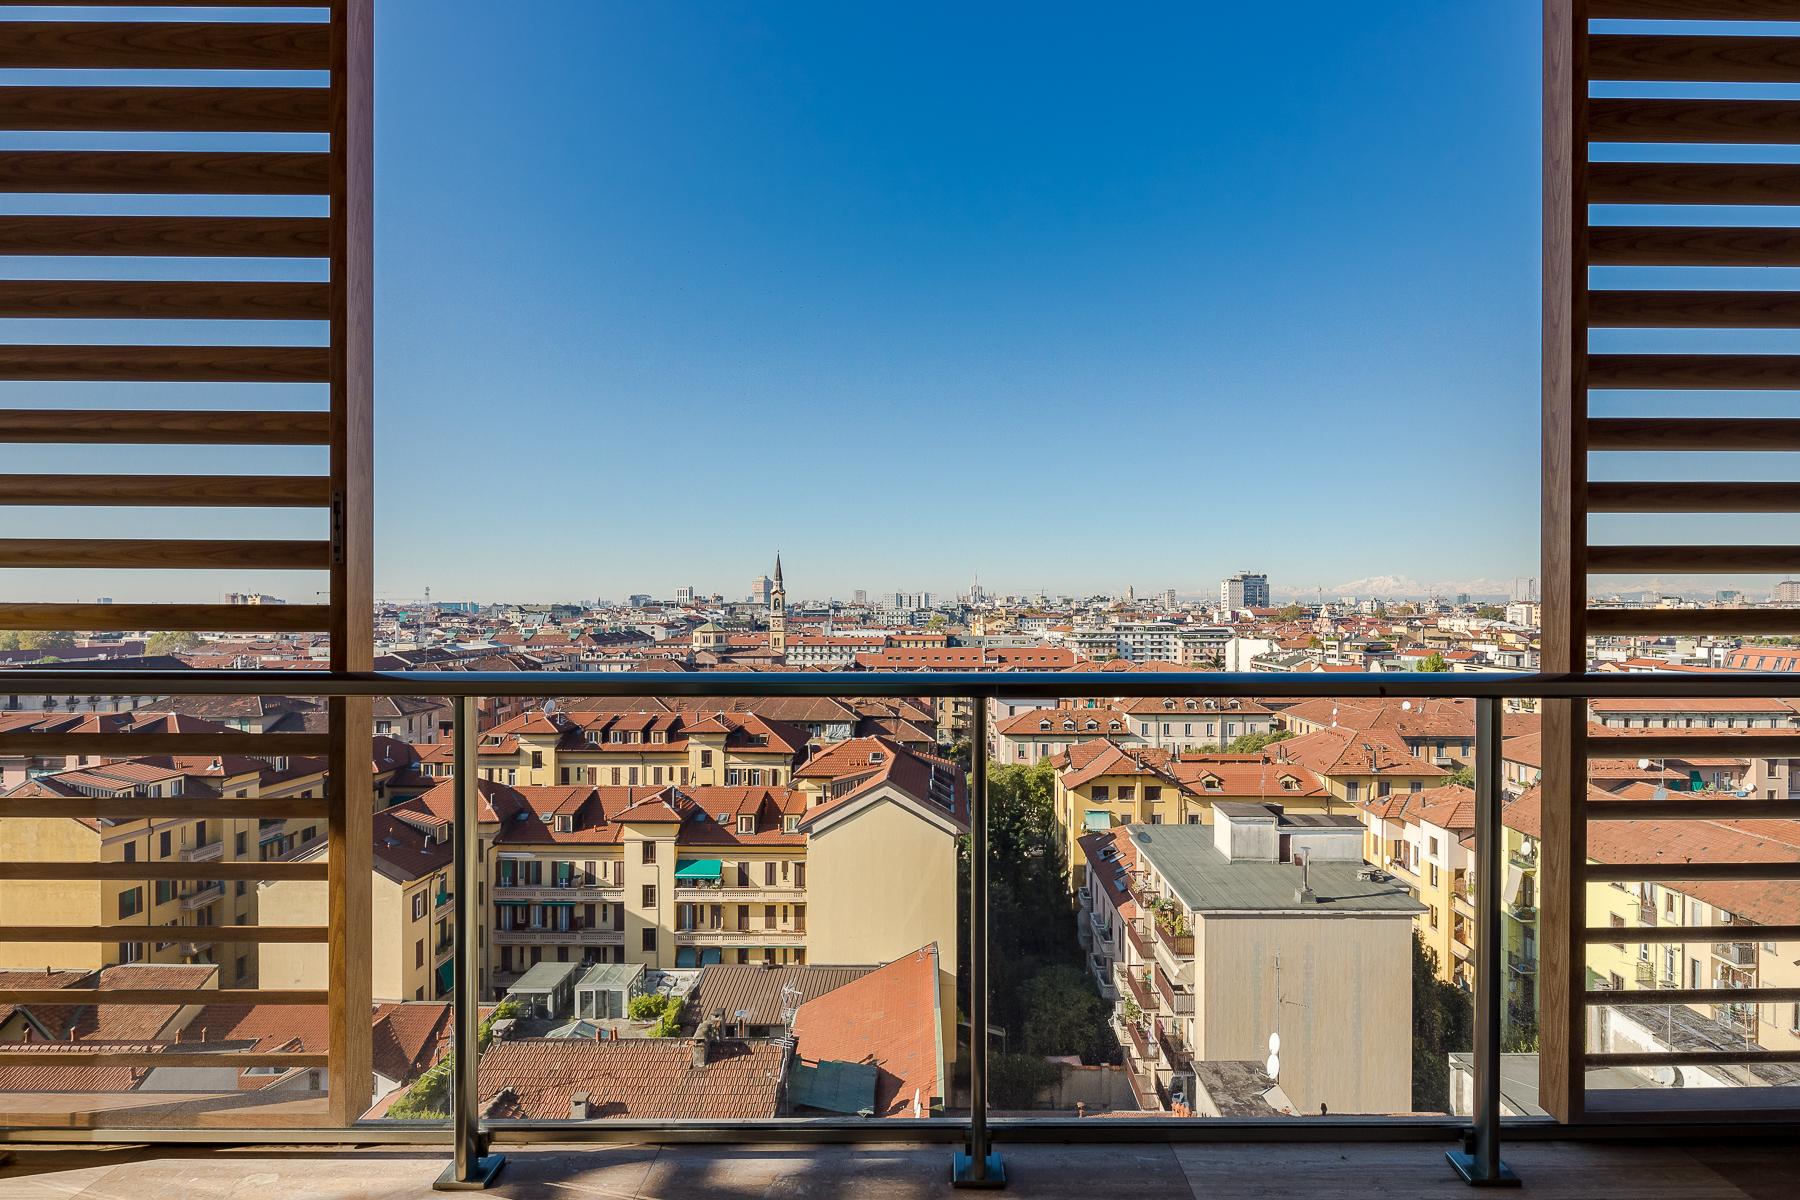 Penthouse spectaculaire avec vue à 360° sur la ville - 2